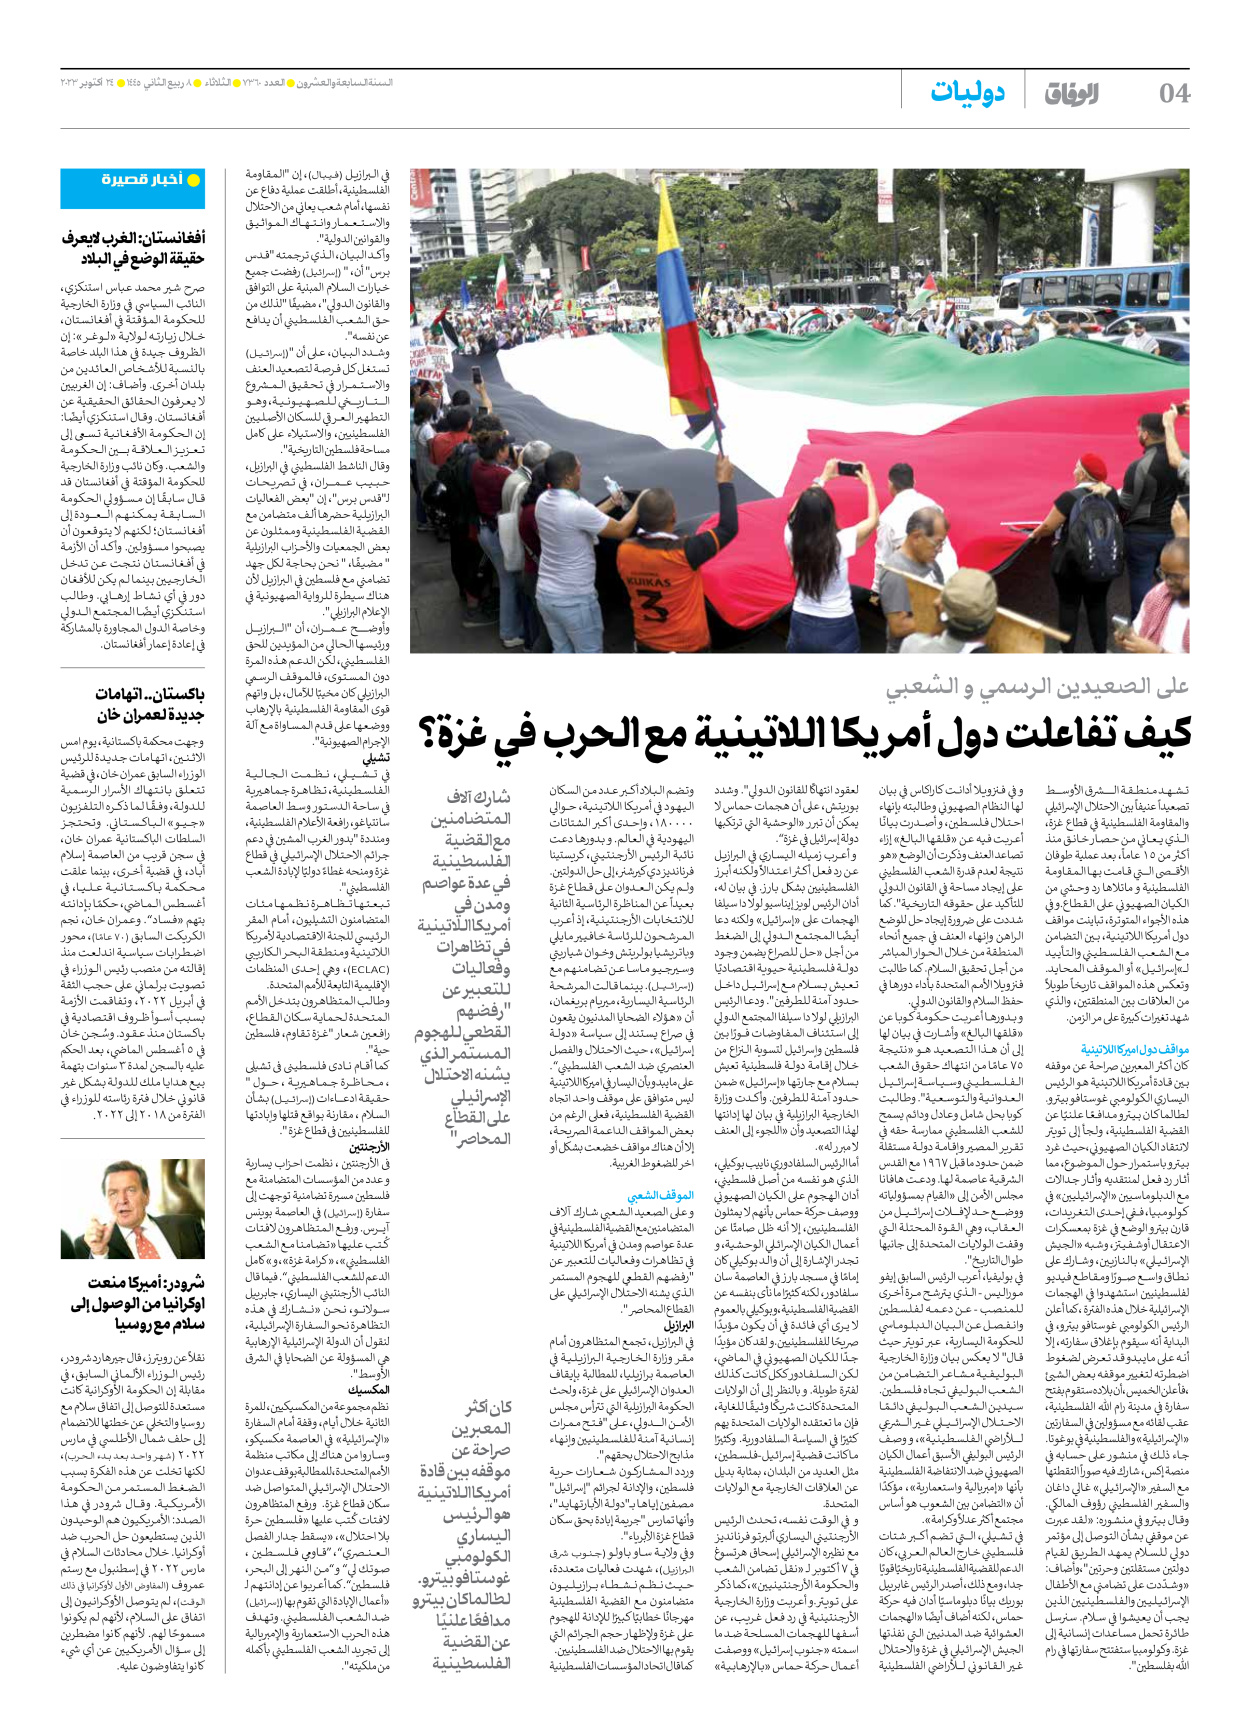 صحیفة ایران الدولیة الوفاق - العدد سبعة آلاف وثلاثمائة وستون - ٢٤ أكتوبر ٢٠٢٣ - الصفحة ٤